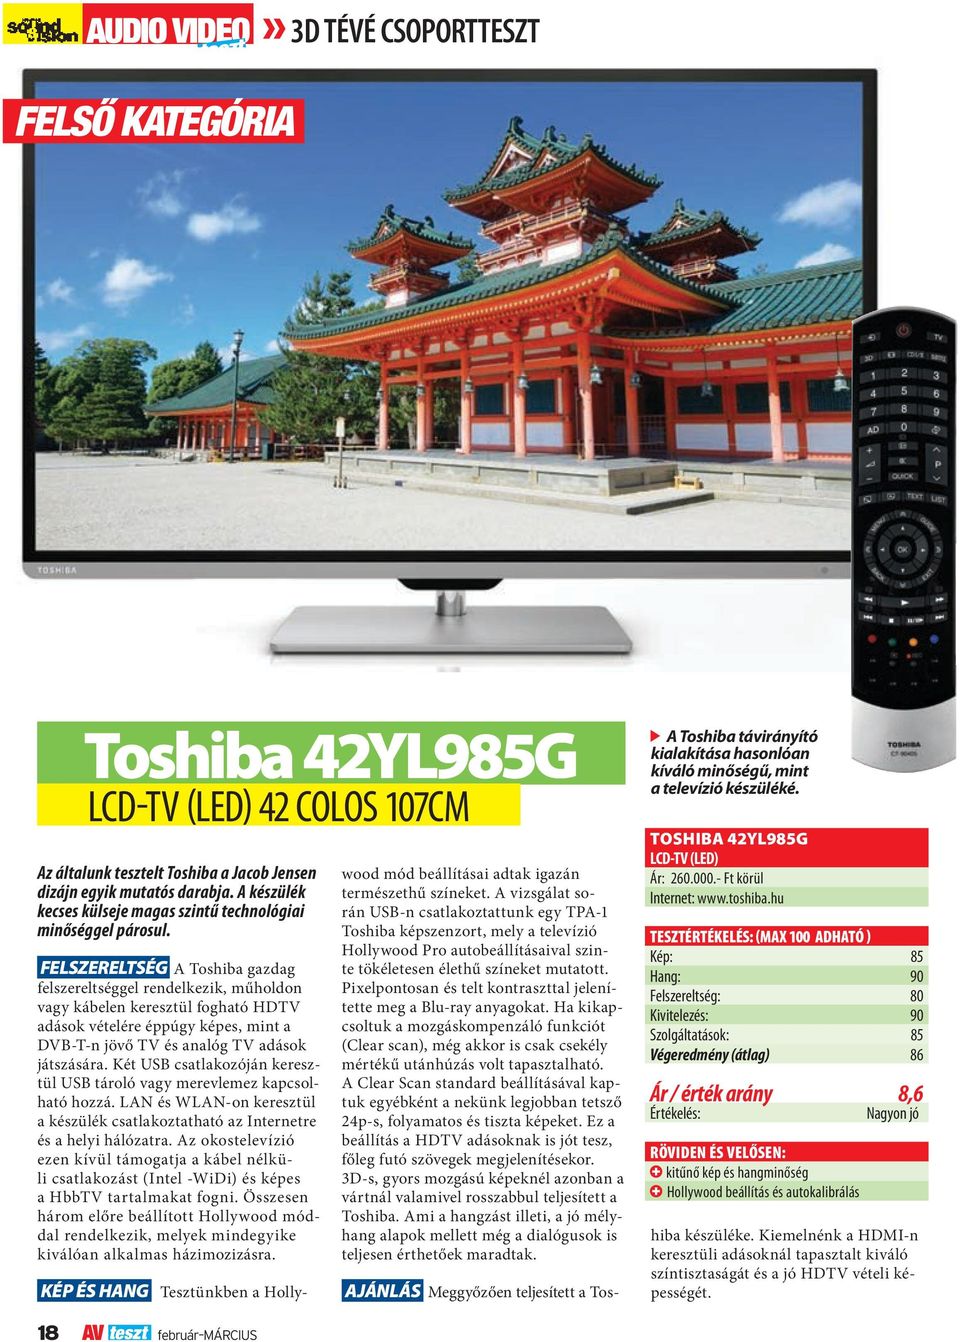 Felszereltség A Toshiba gazdag felszereltséggel rendelkezik, műholdon vagy kábelen keresztül fogható HDTV adások vételére éppúgy képes, mint a DVB-T-n jövő TV és analóg TV adások játszására.